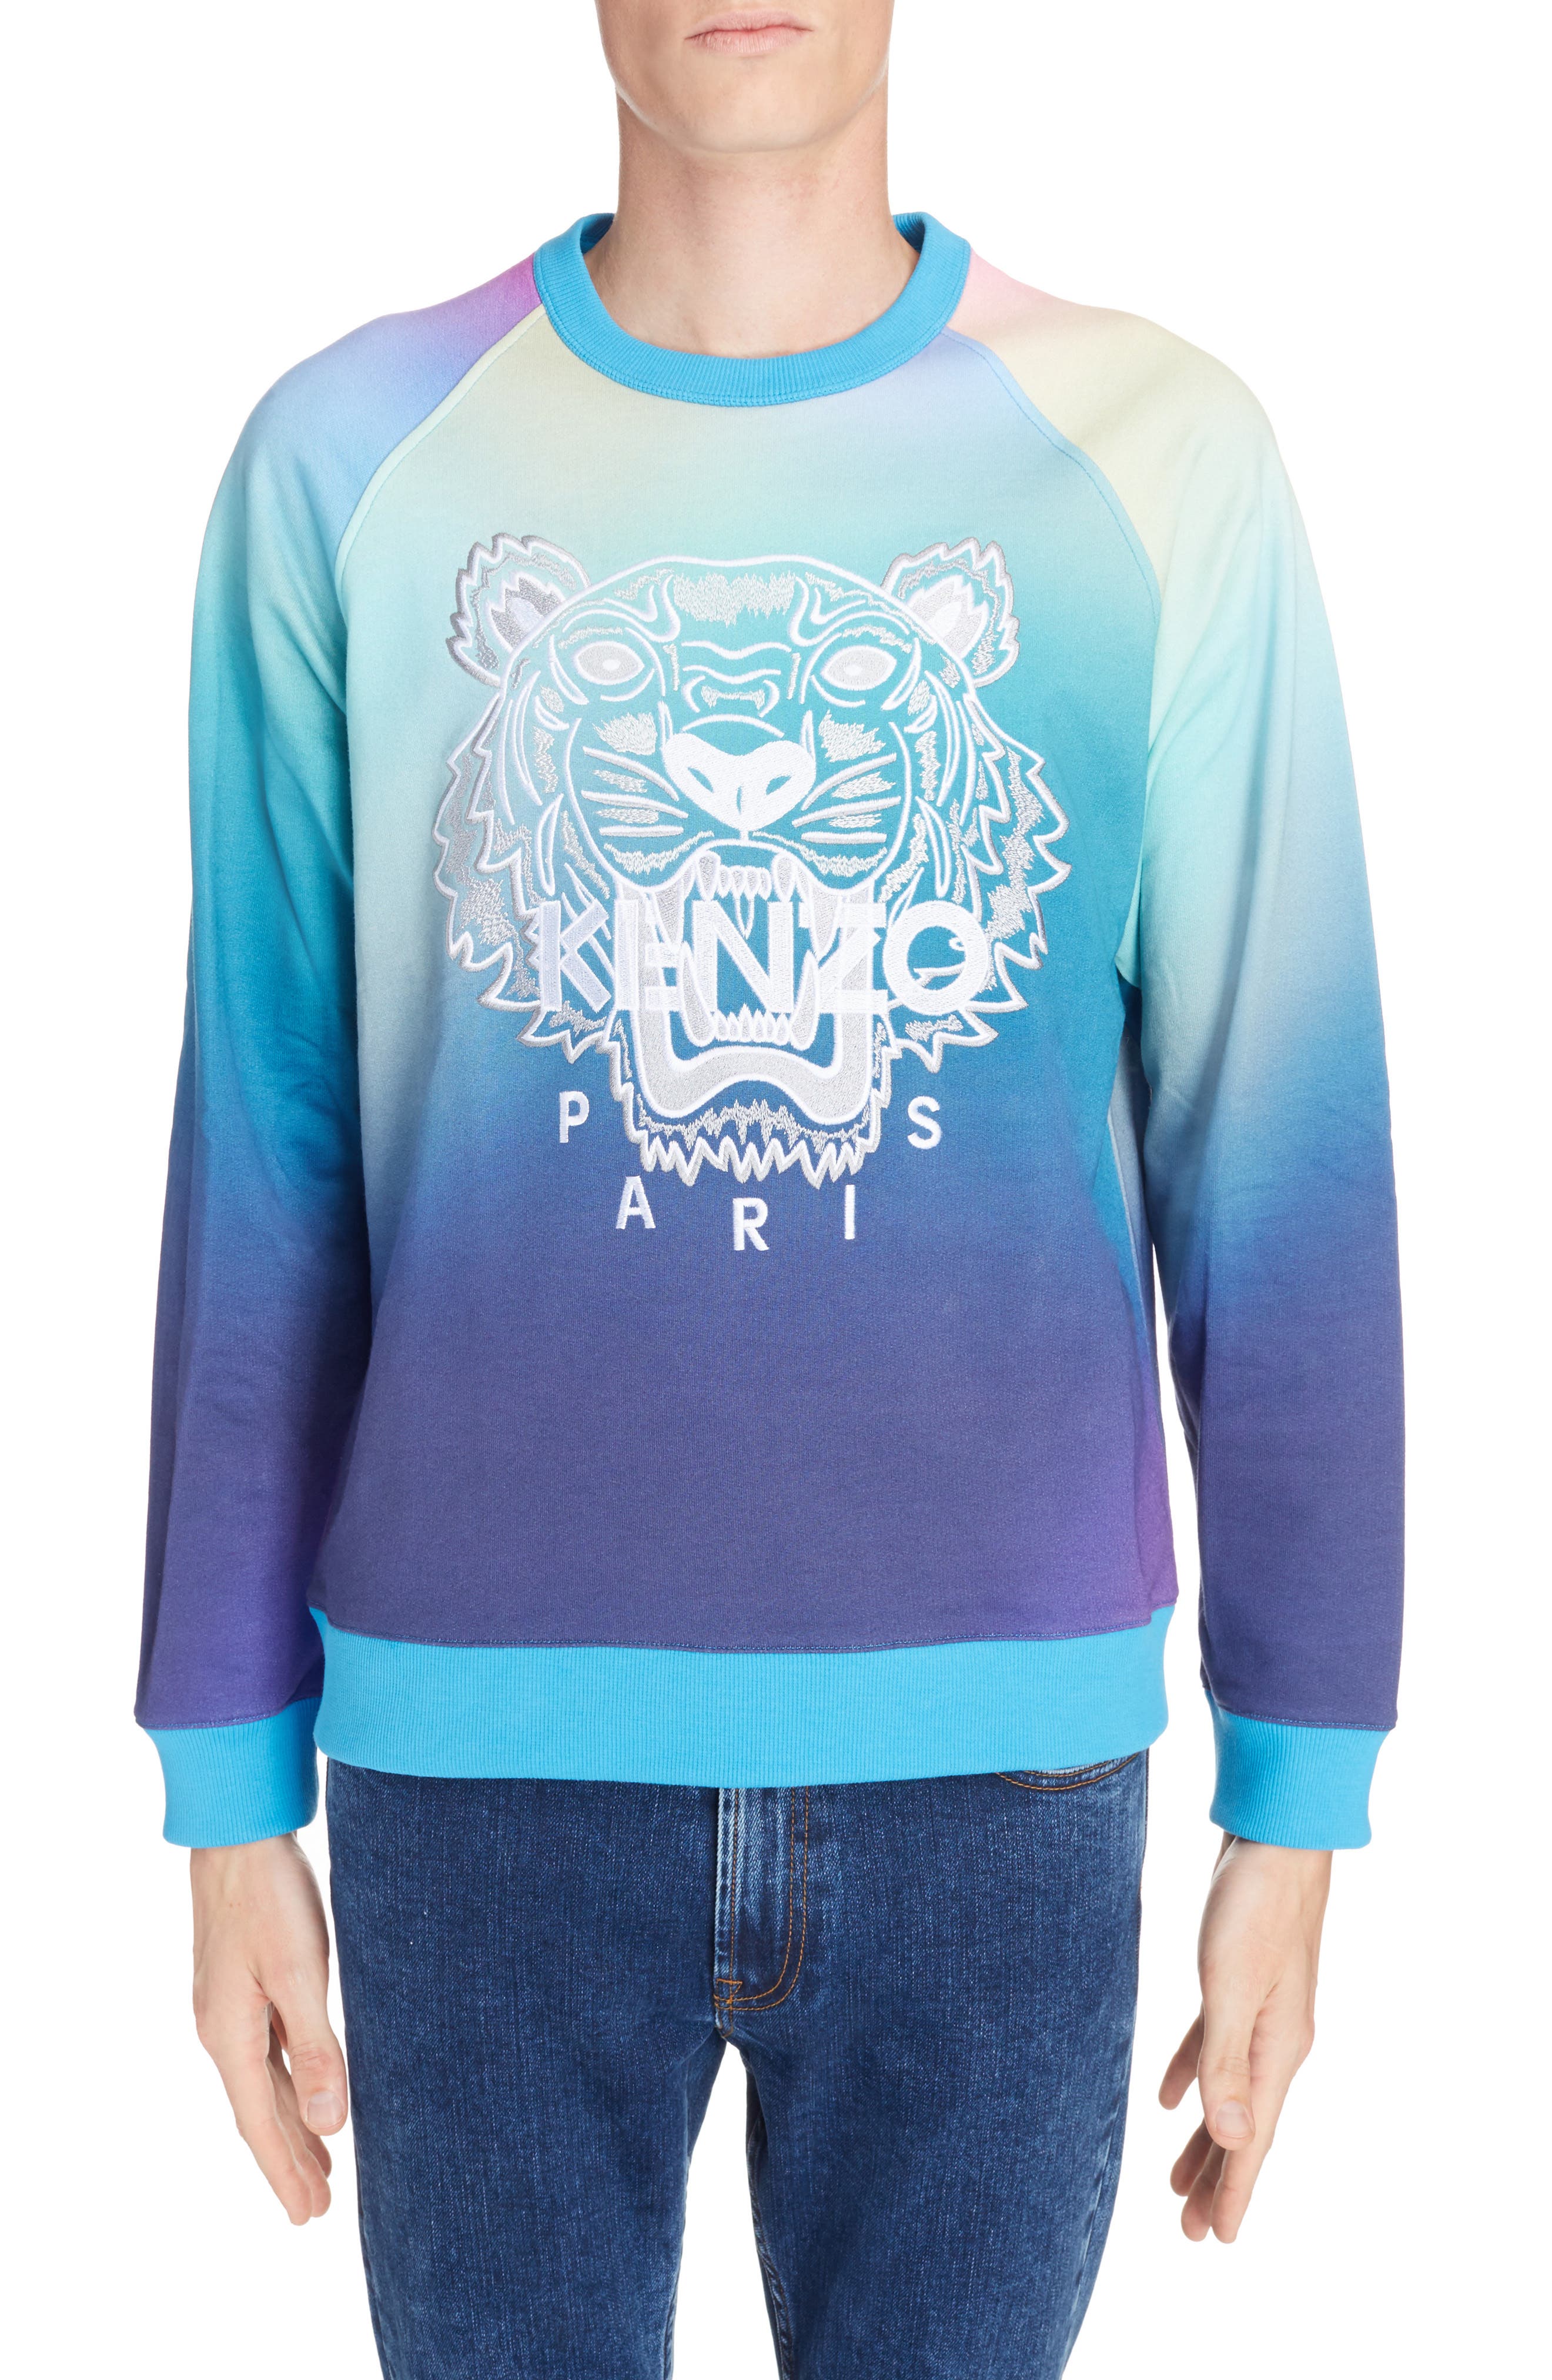 kenzo rainbow sweatshirt